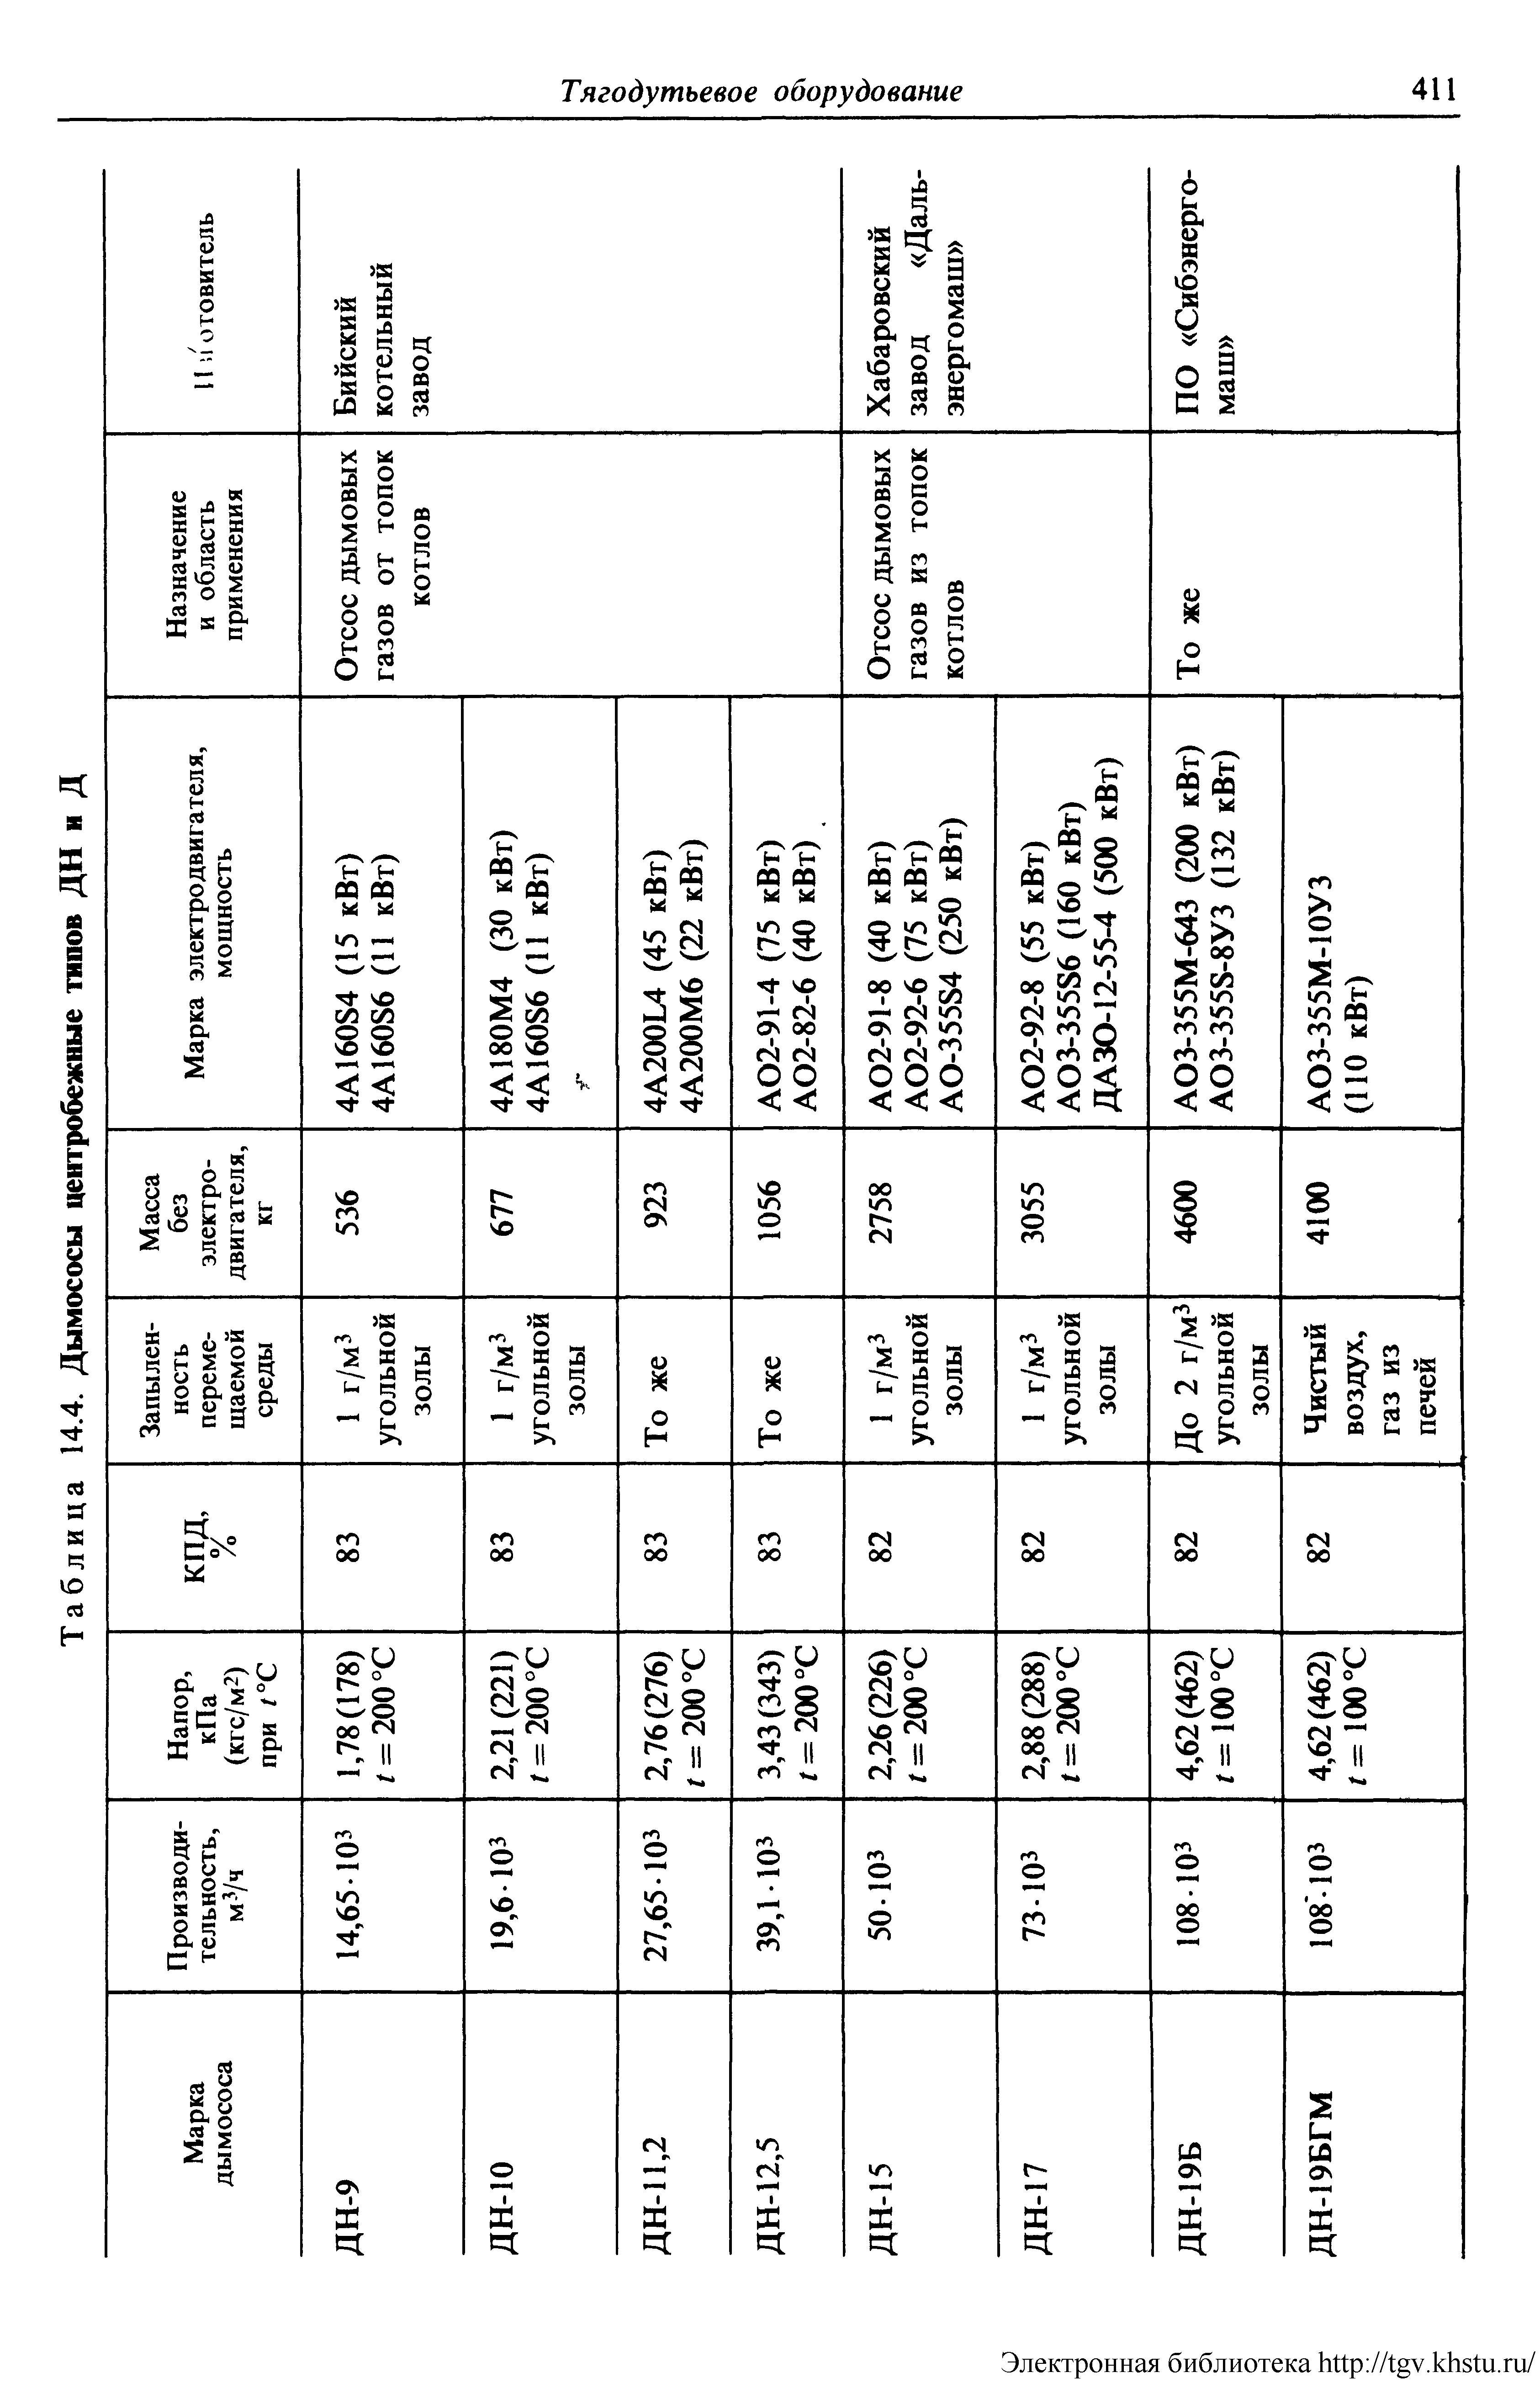 Таблица 14.4. Дымососы центробежные типов ДН и Д
